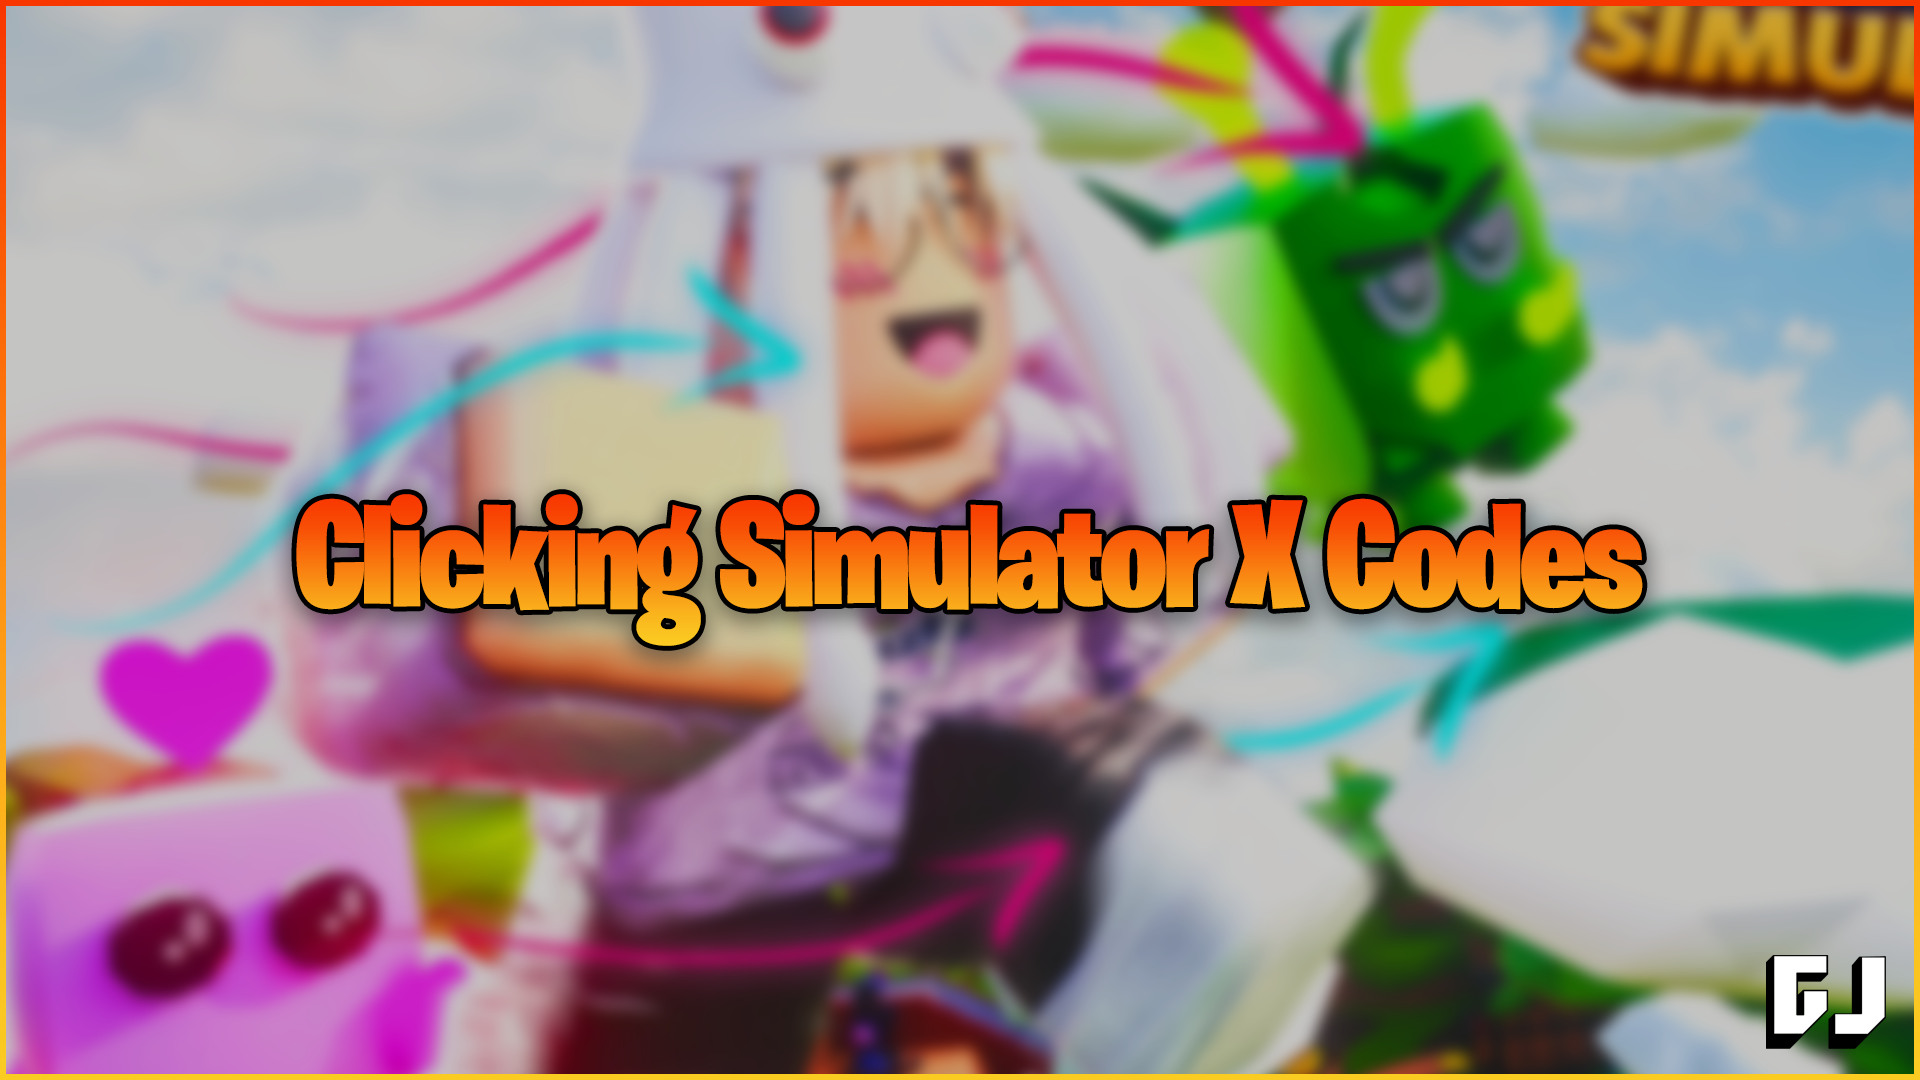 Klicken Sie auf Simulator X-Codes (März 2022)